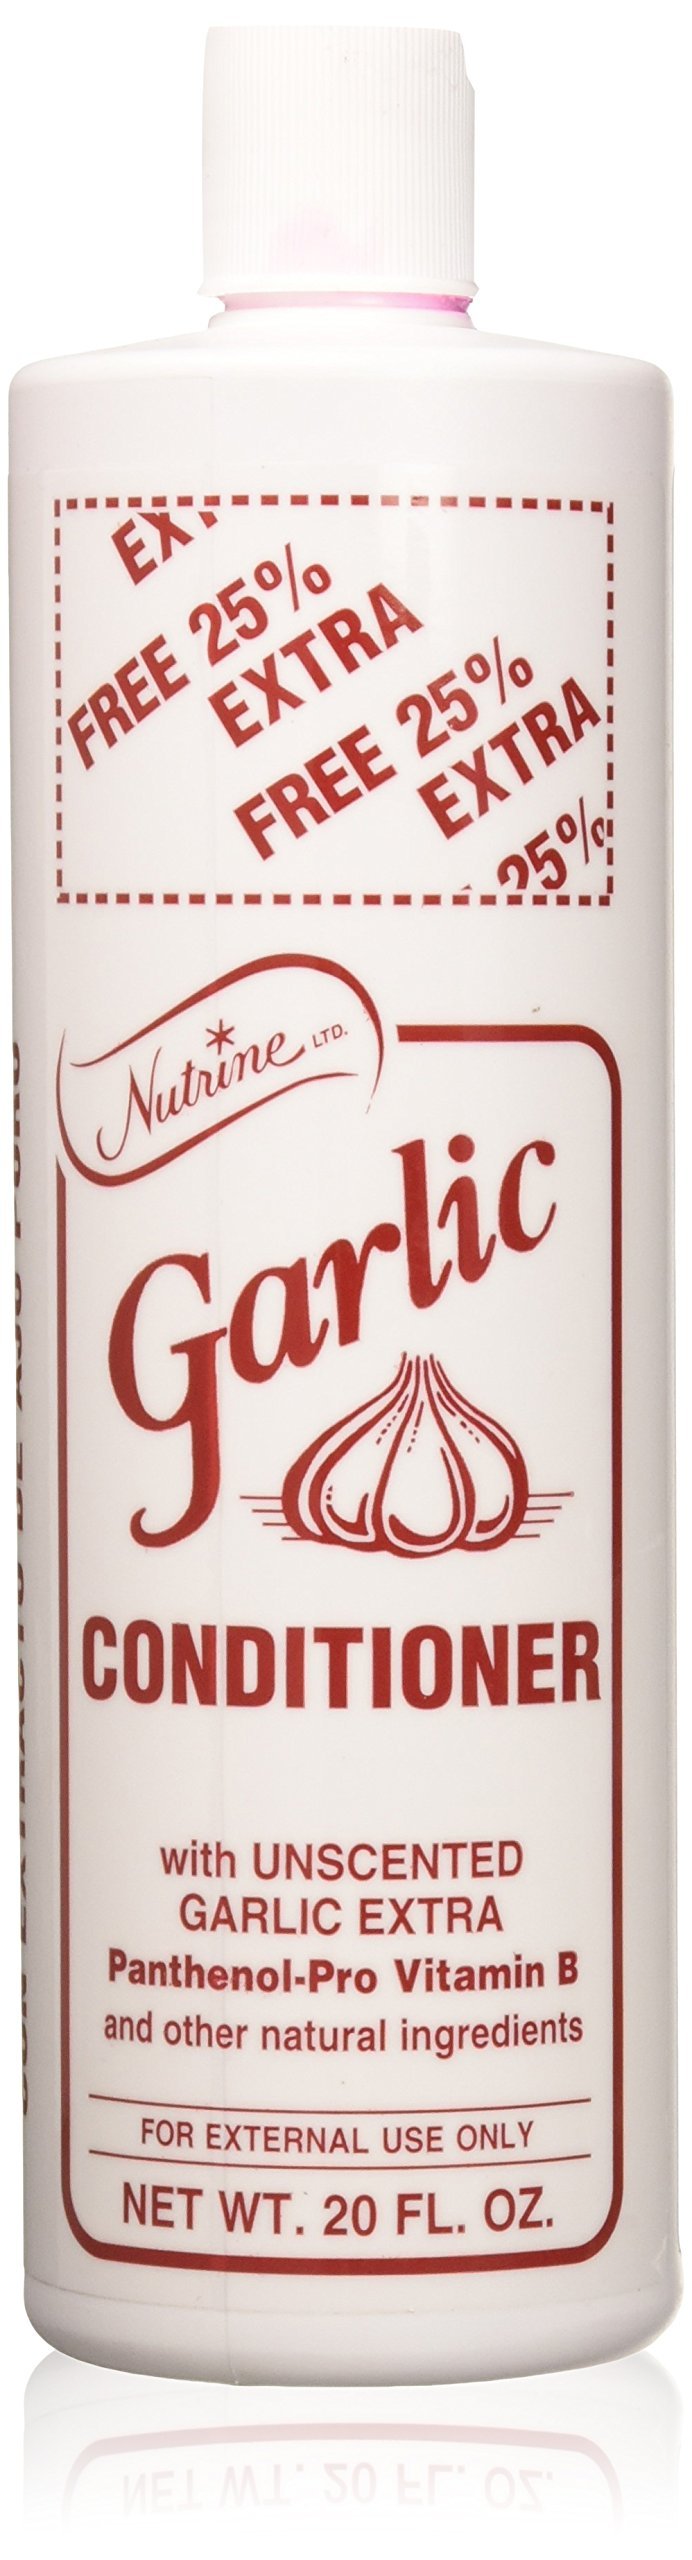 Nutrine Garlic Conditioner 20 oz